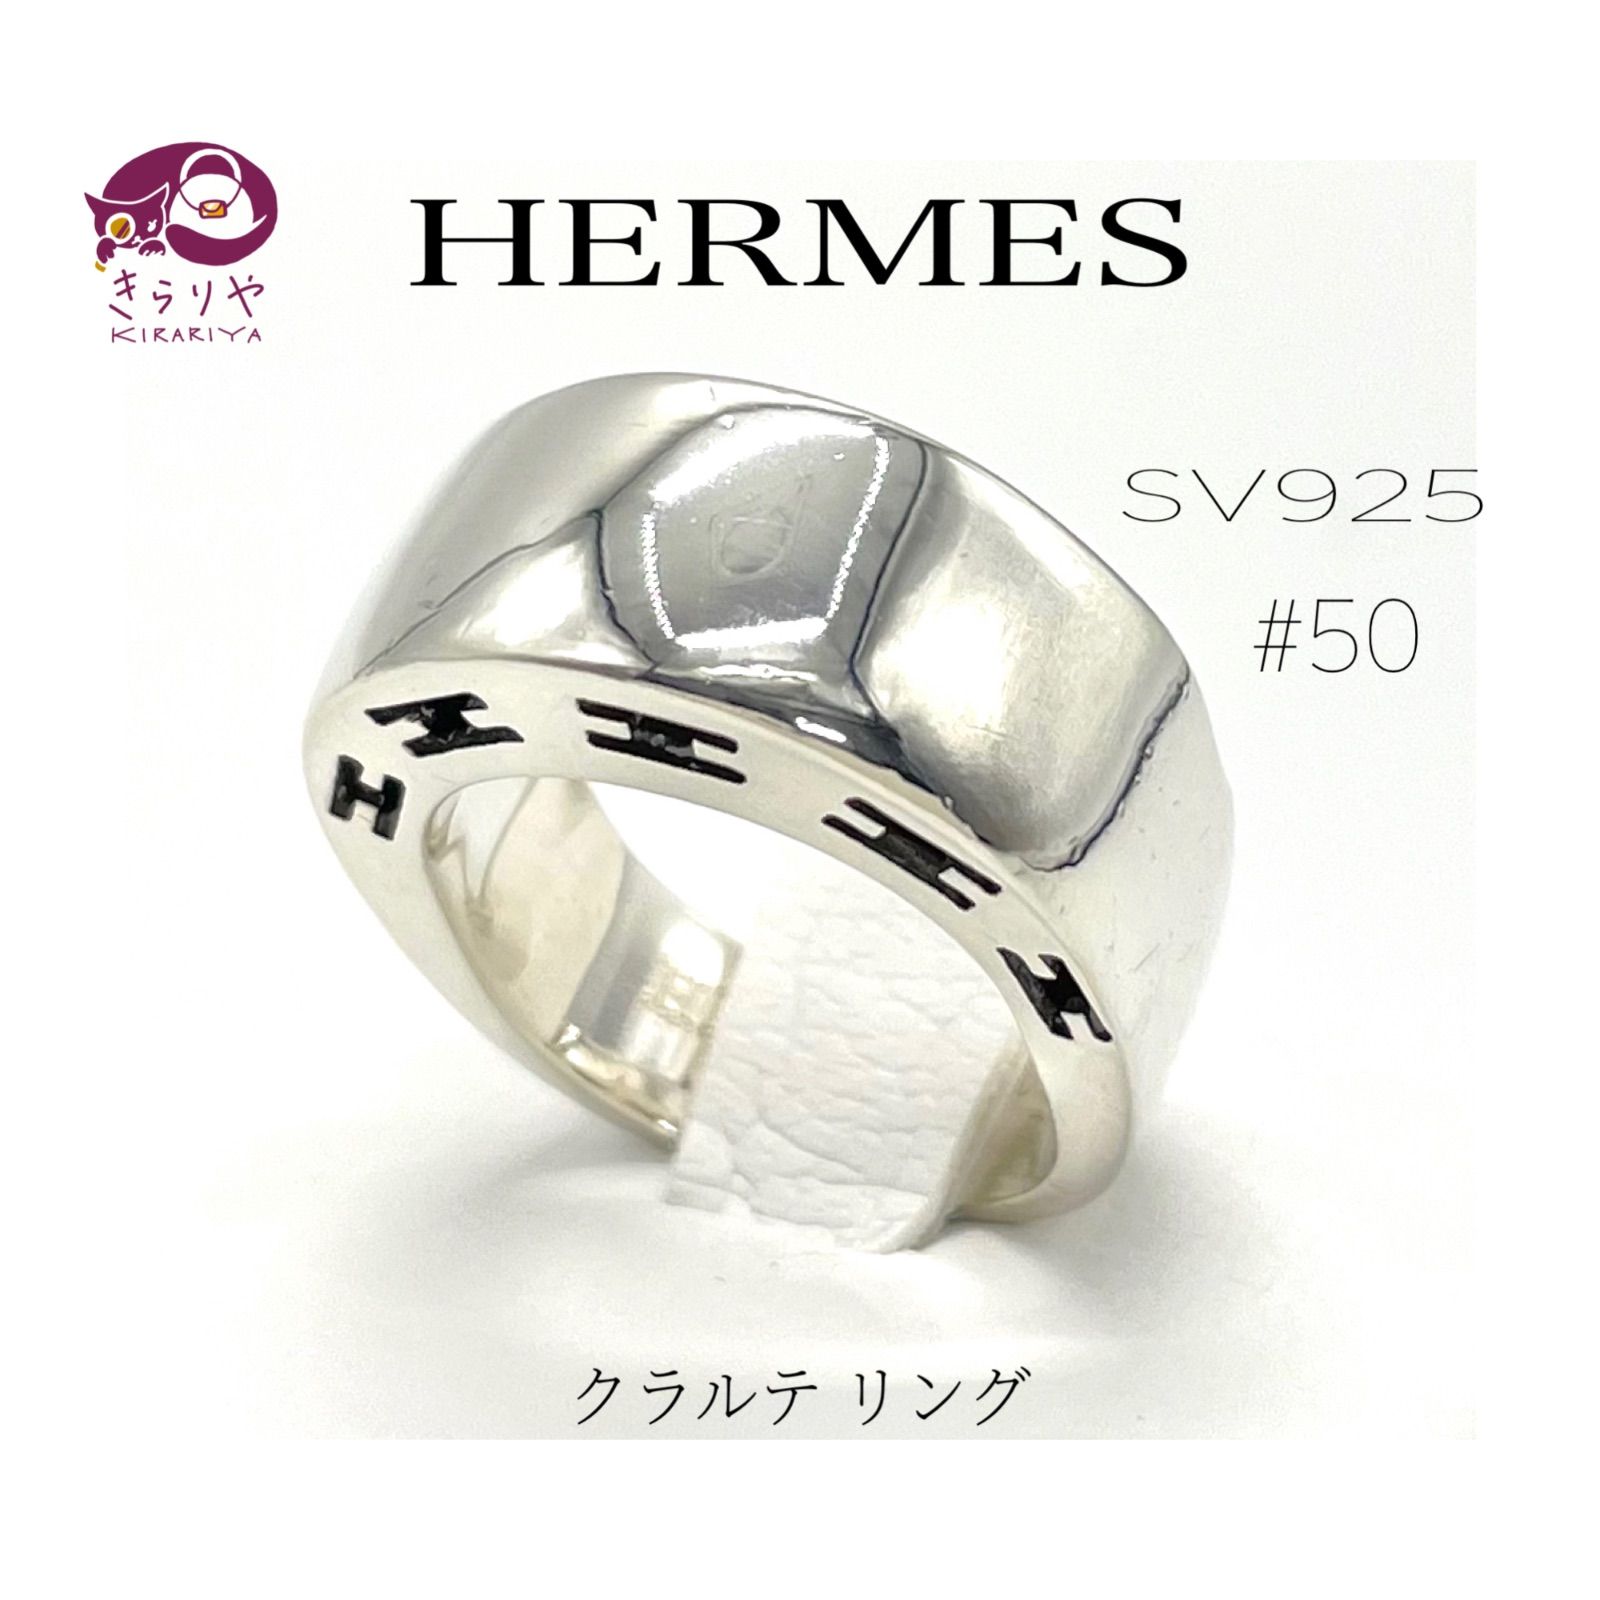 HERMES エルメス CLALTE クラルテ リング SV925 #50 7号相当 メンズ レディース スターリングシルバー 指輪